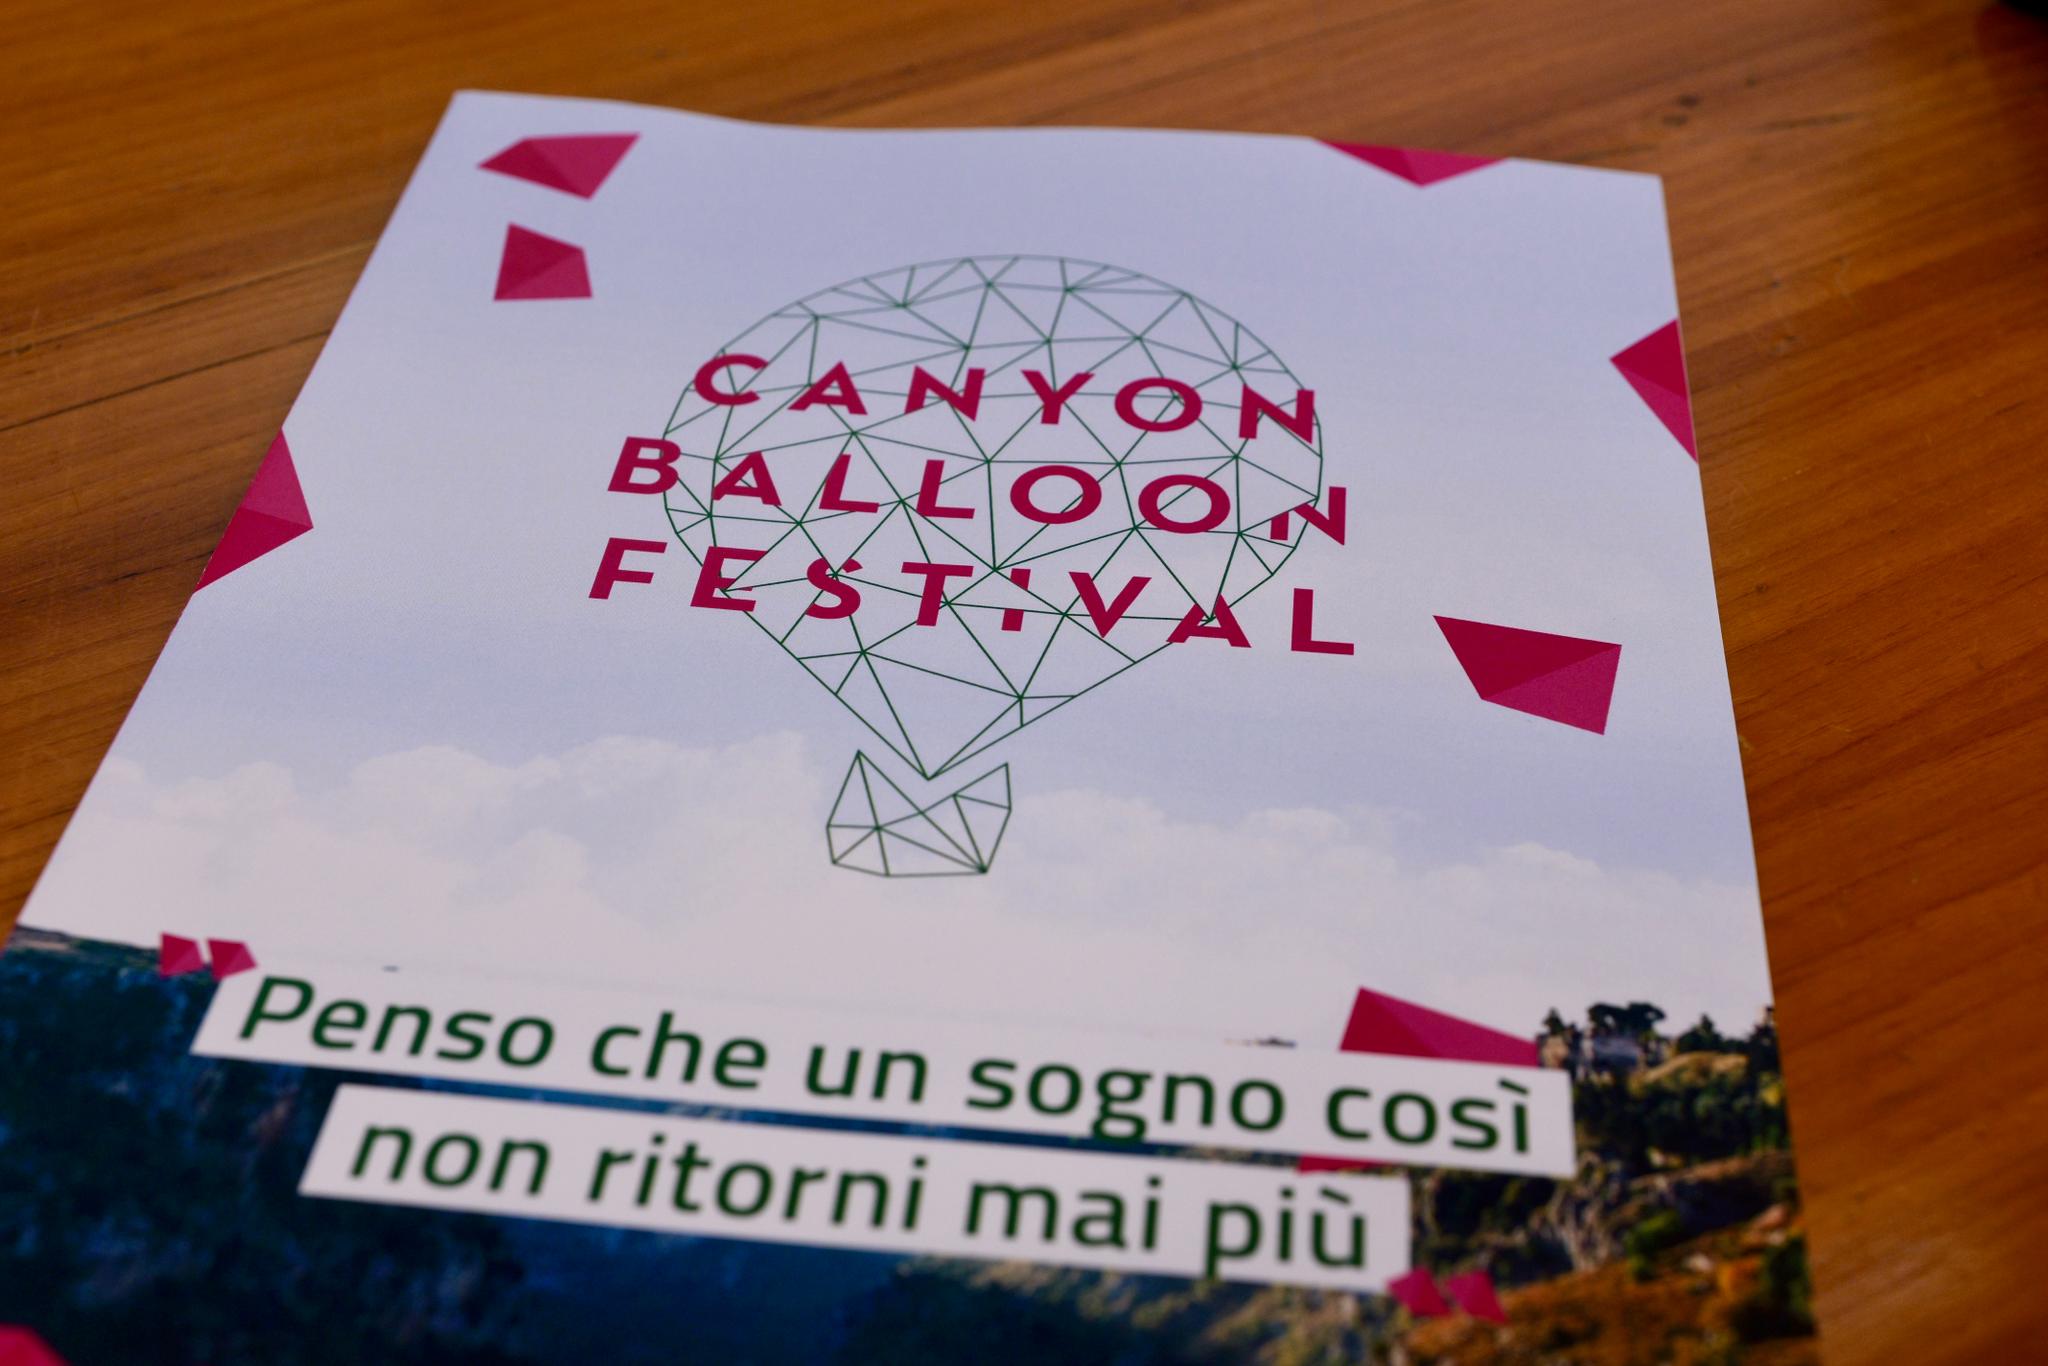 Galleria NELLA TERRA DELLE GRAVINE RITORNA IL CANYON BALLOON FESTIVAL - Diapositiva 2 di 7